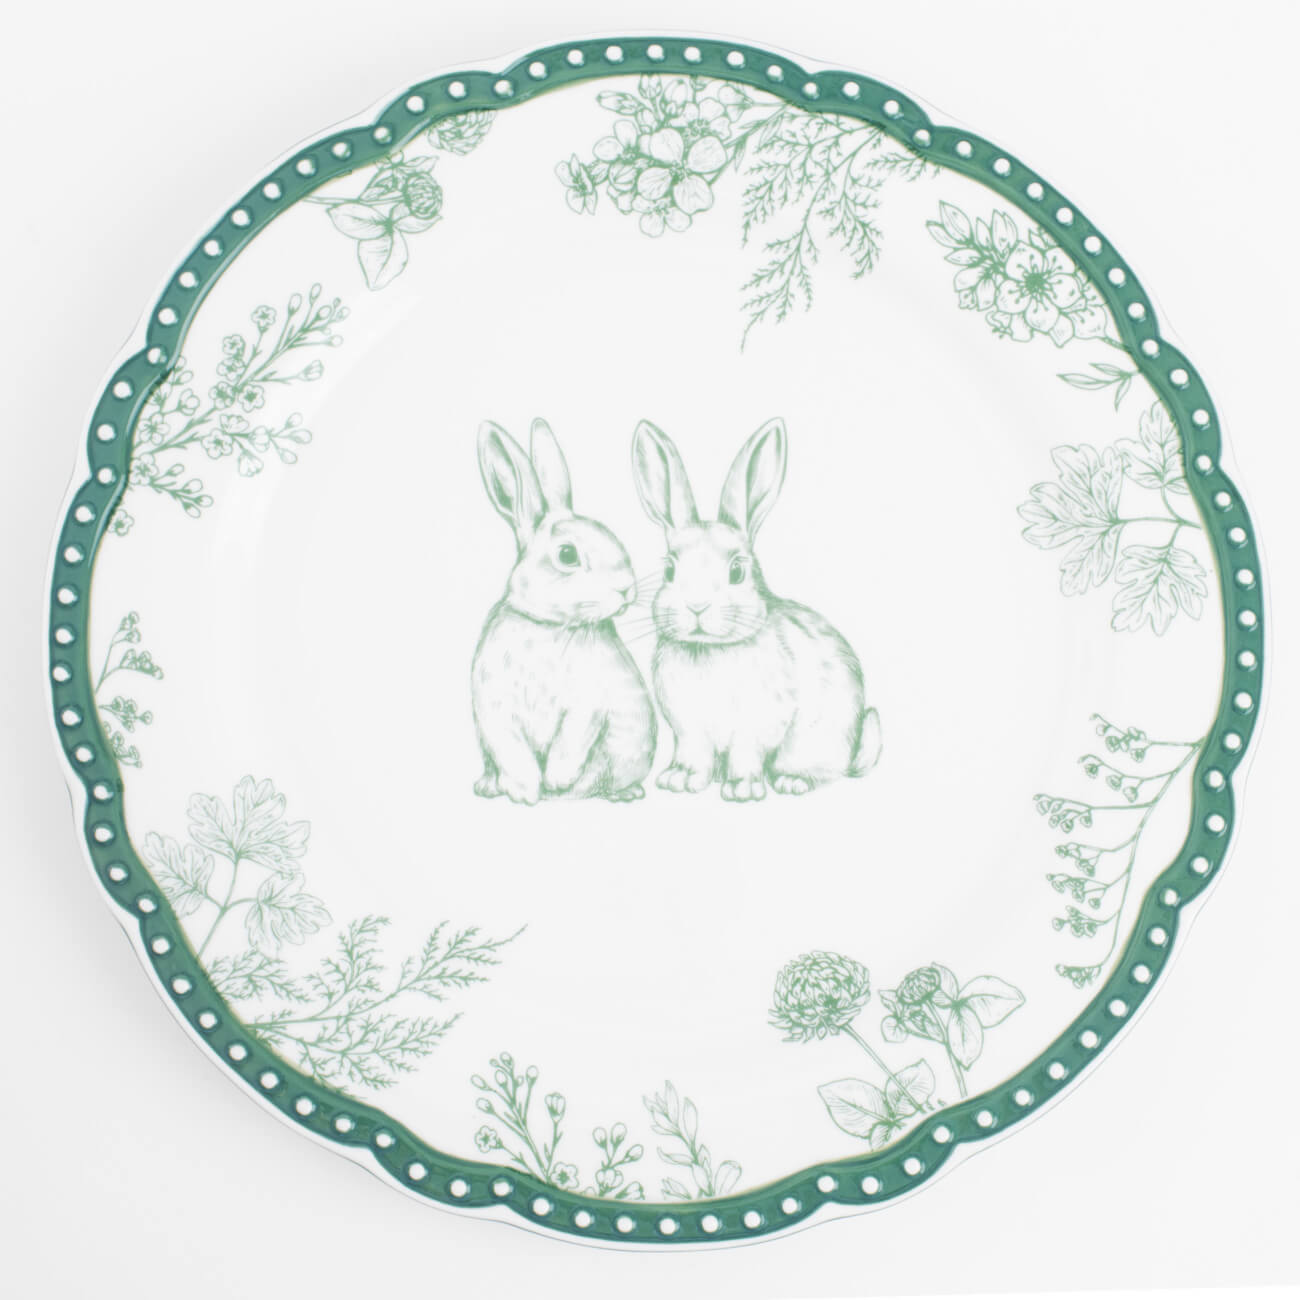 Тарелка обеденная, 27 см, керамика, бело-зеленая, Кролики и цветы, Easter blooming изображение № 1